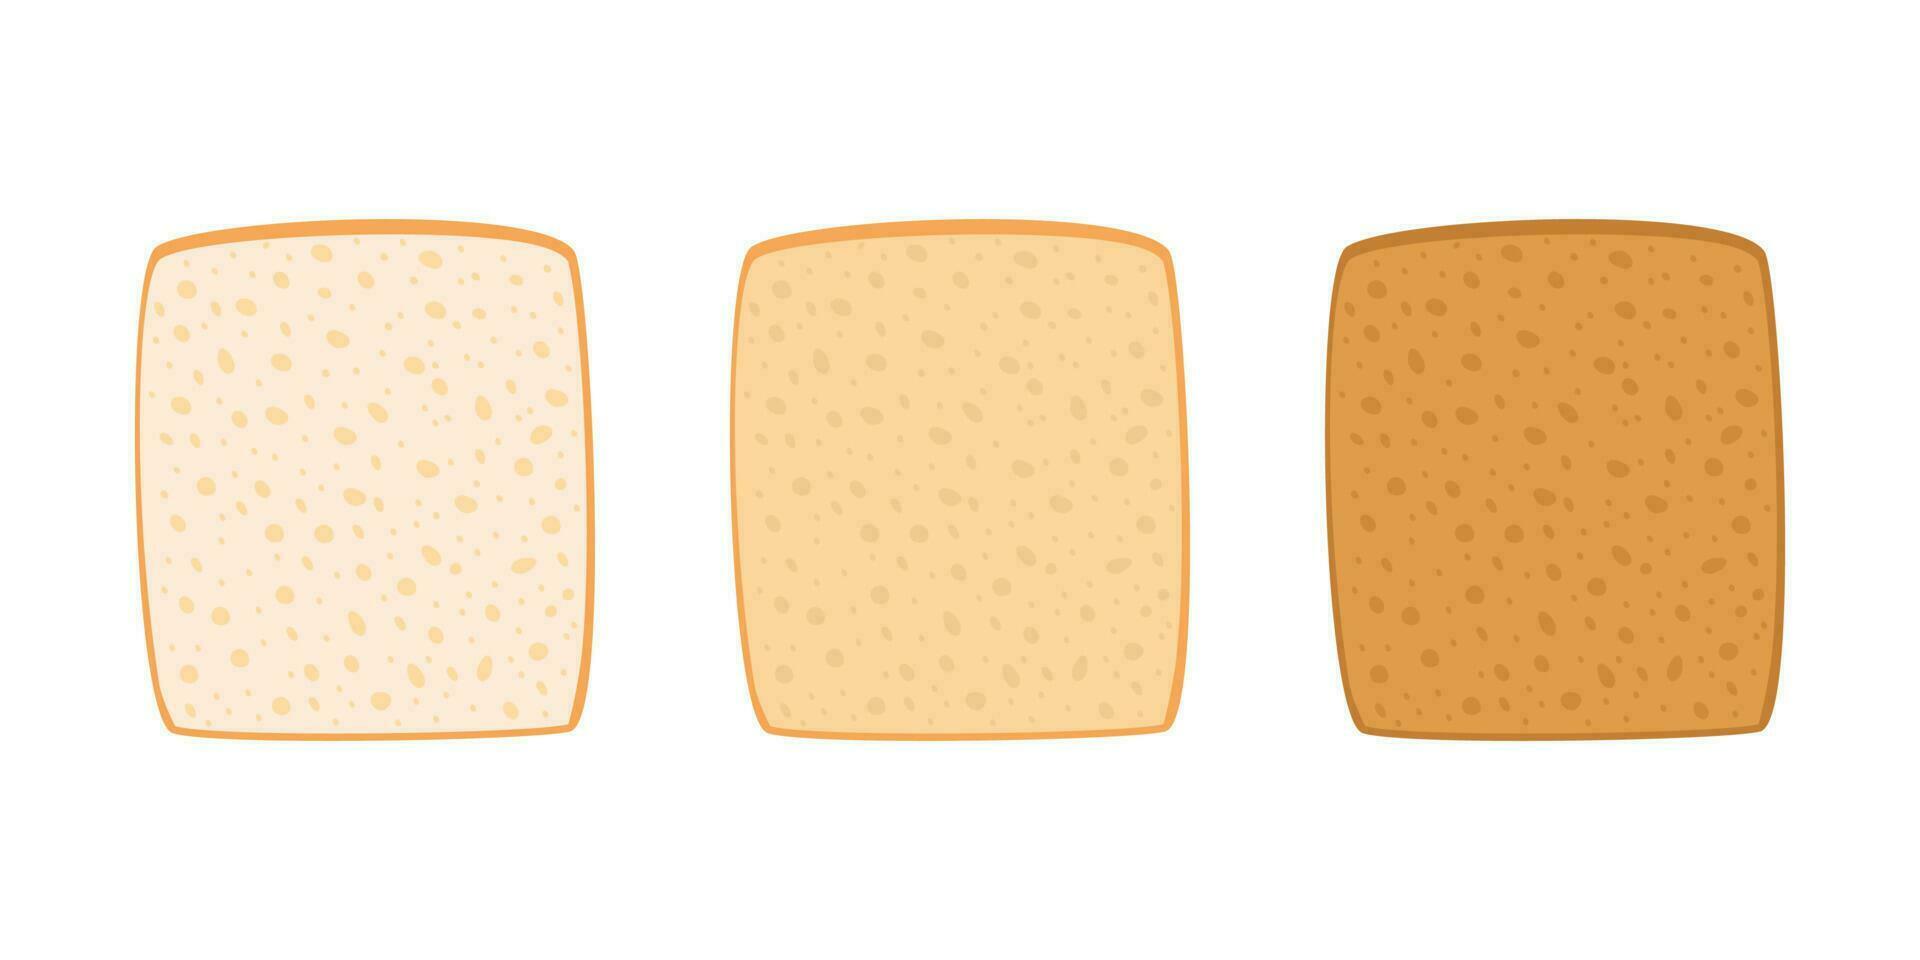 brindis un pan cortar rebanada desde trigo colocar. tostado pedazo panadería alimento. rebanadas de brindis un pan con variar grados de tostado cuadrado pan, blanco un pan. vector ilustración